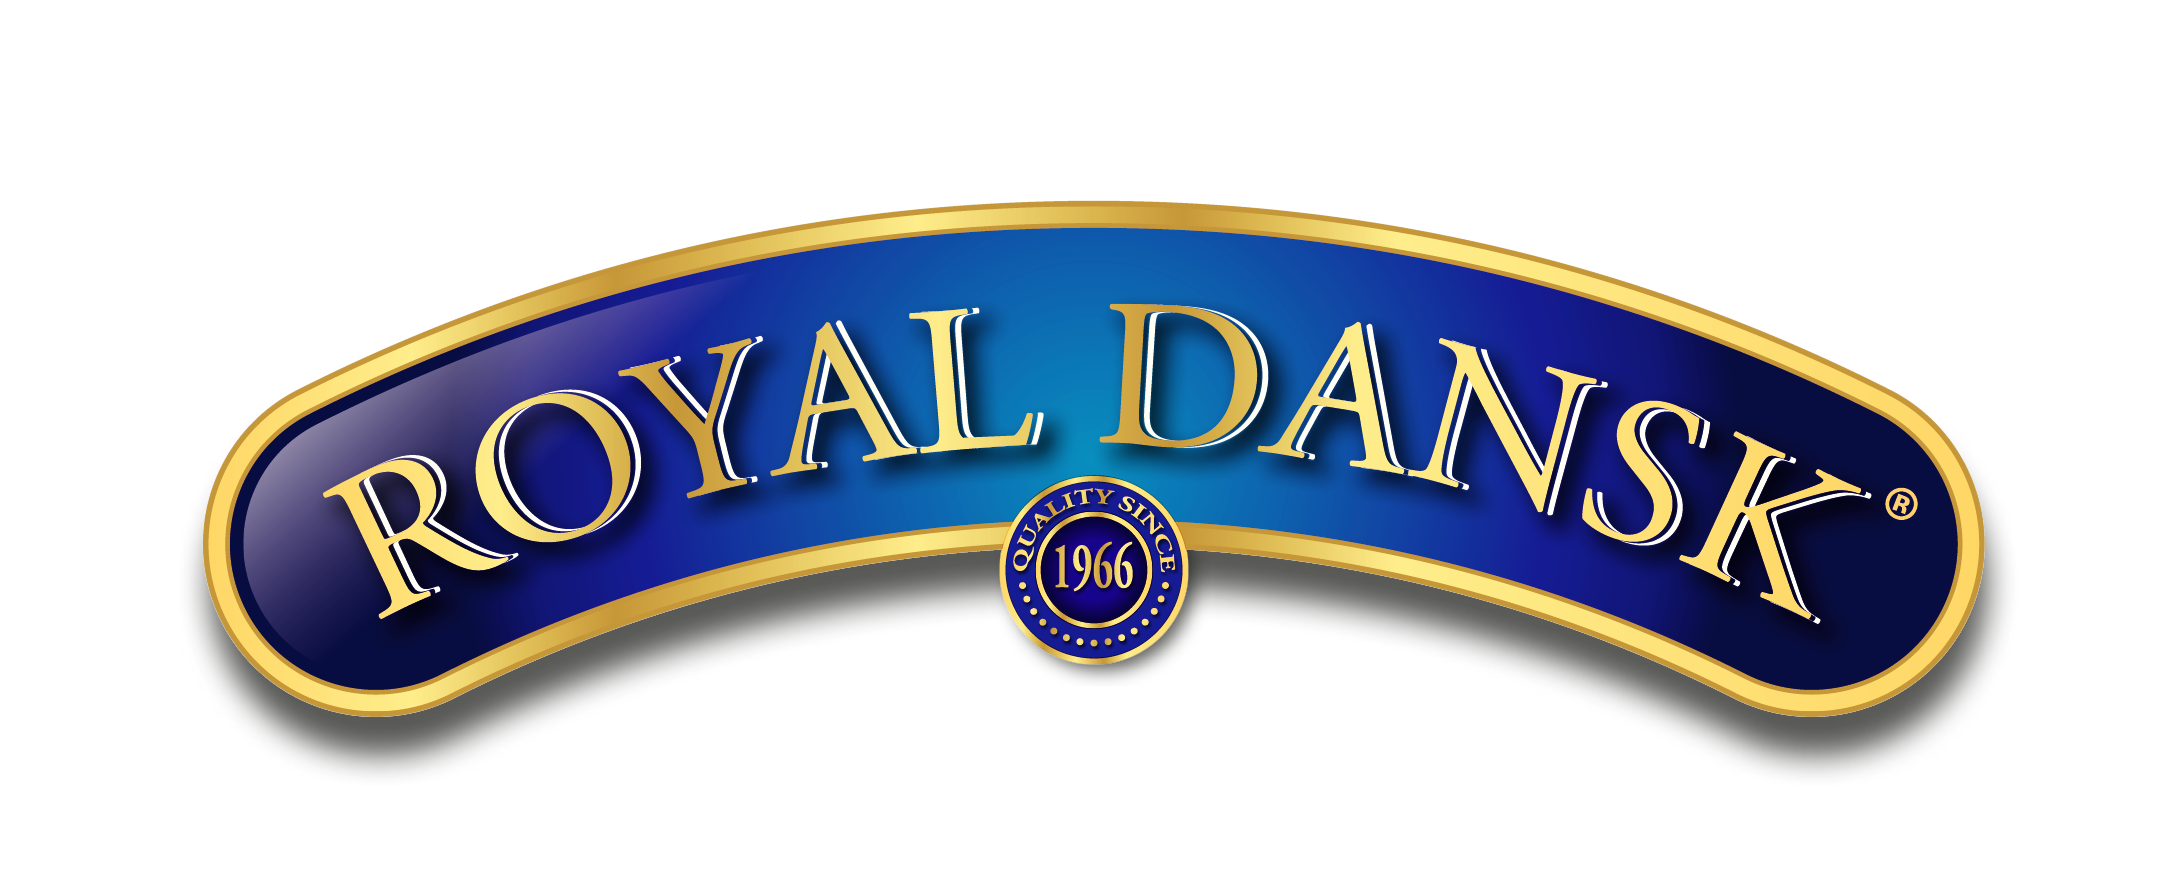 Royal-Dansk-logo.png